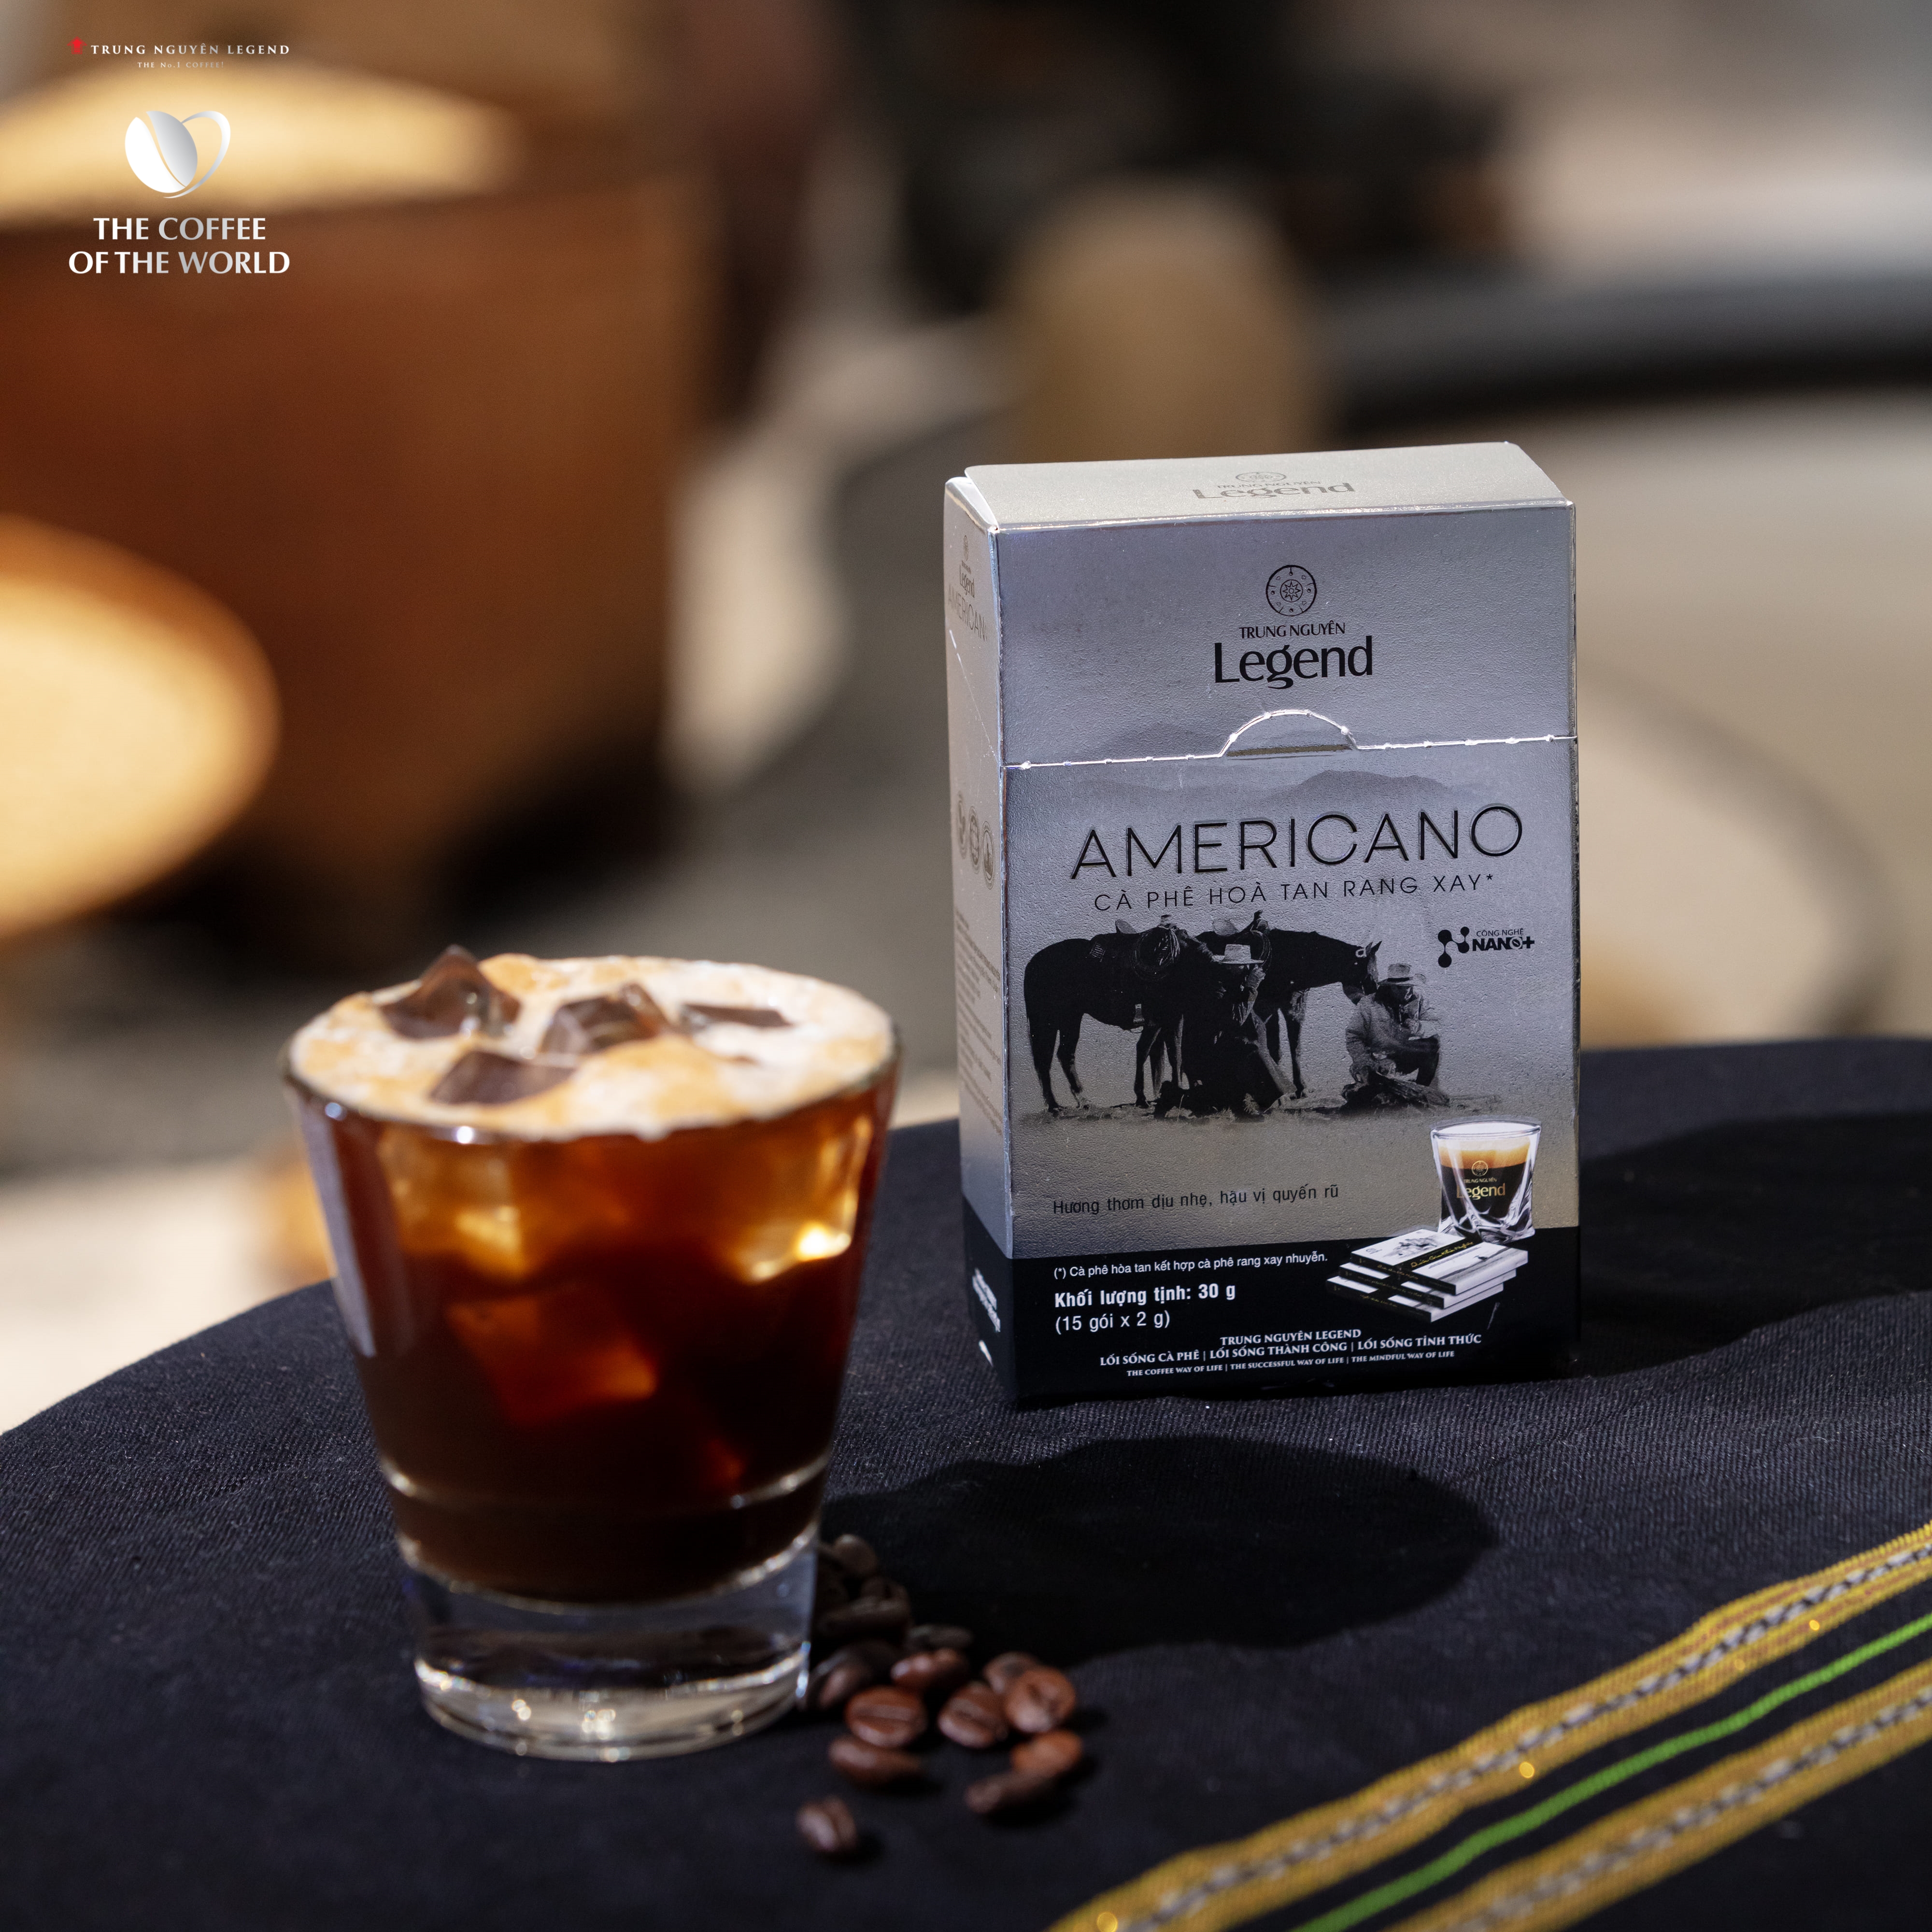 Cà phê hòa tan đen - Trung Nguyên Legend Americano hộp 15 gói x 2g